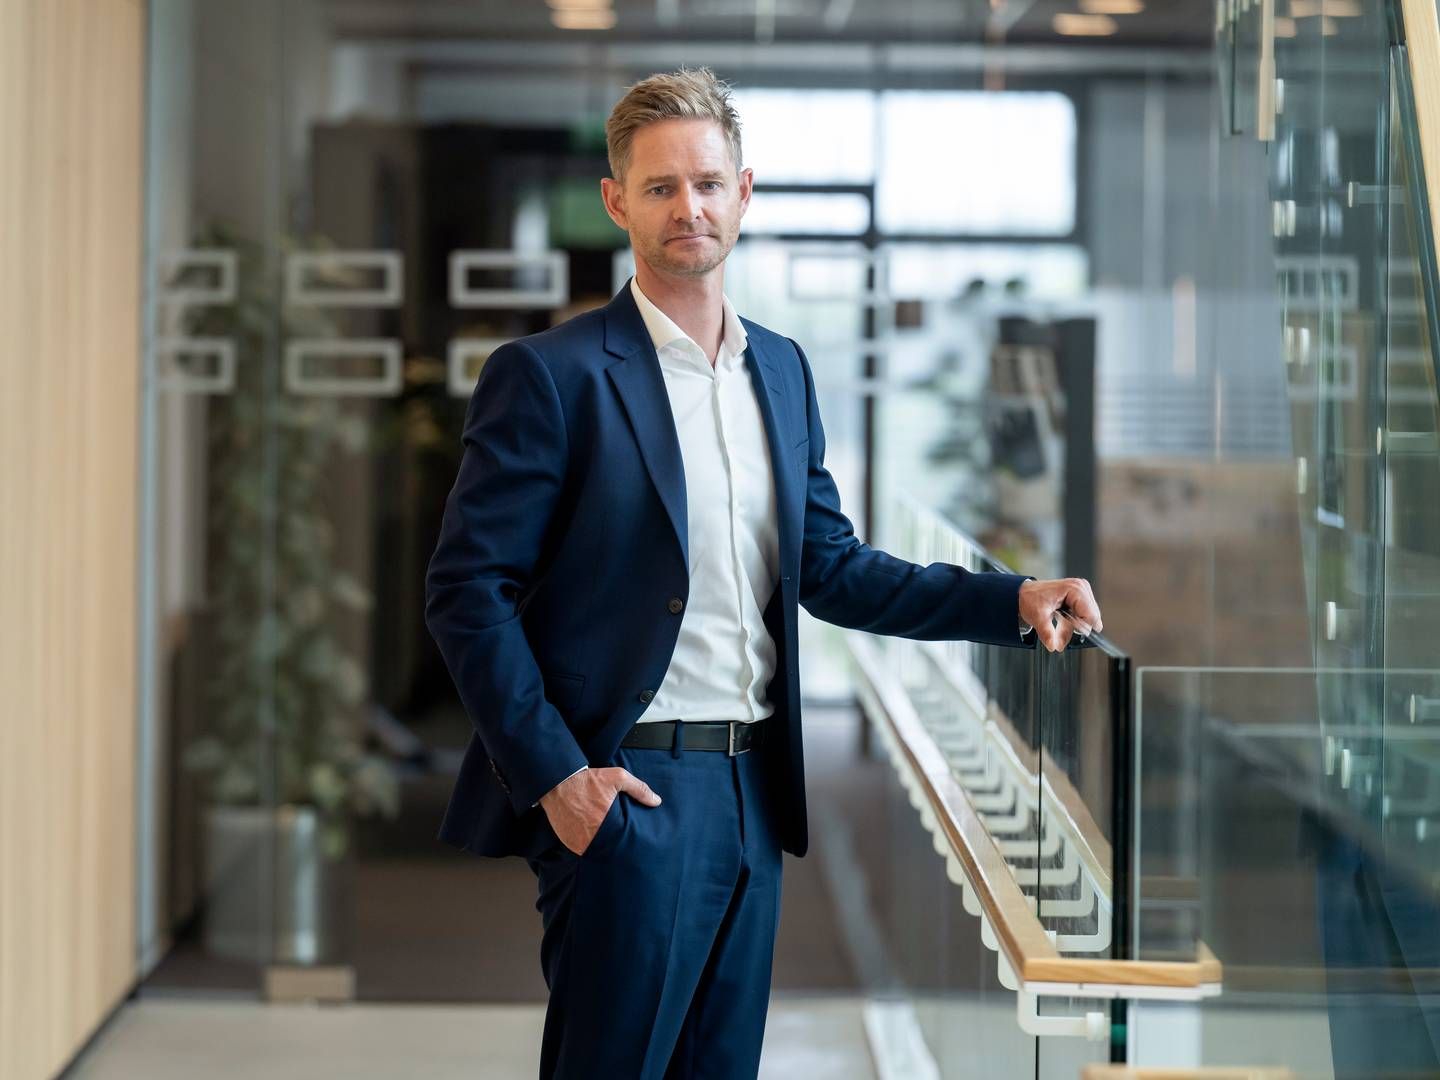 Adm. direktør Esben Kolind Laustrup forventer ikke, at staben hos Bankdata kommer til at vokse markant mere fra det nuværende niveau i underkanten af 1000. | Foto: bankdata